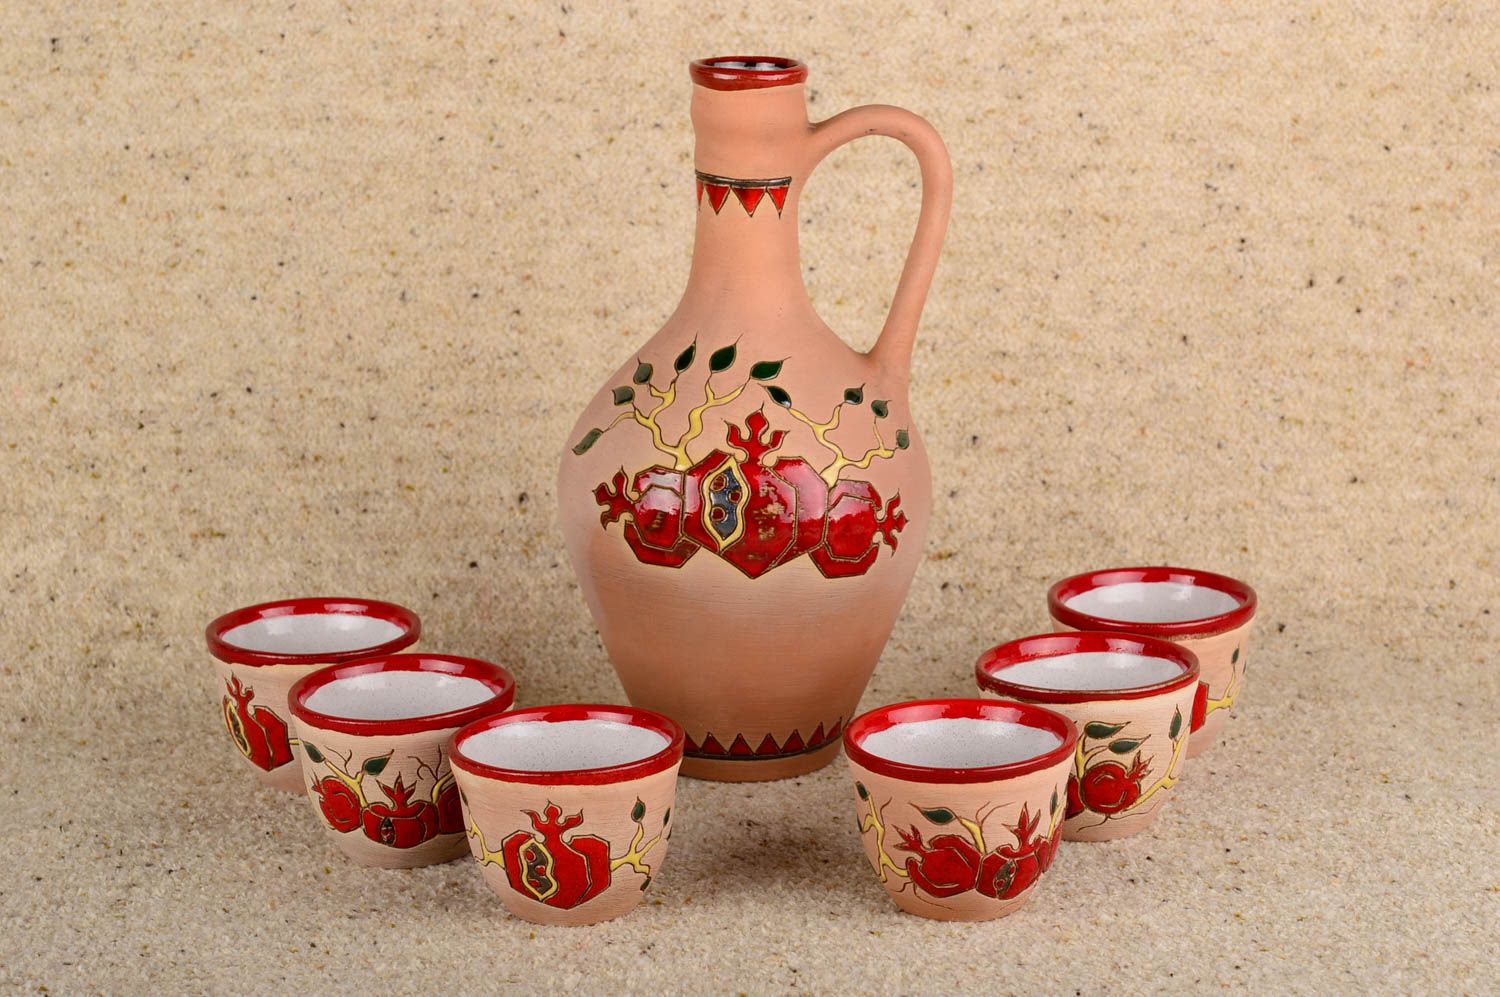 Посуда ручной работы глиняная посуда набор керамики большой кувшин и 6 чашек  фото 1